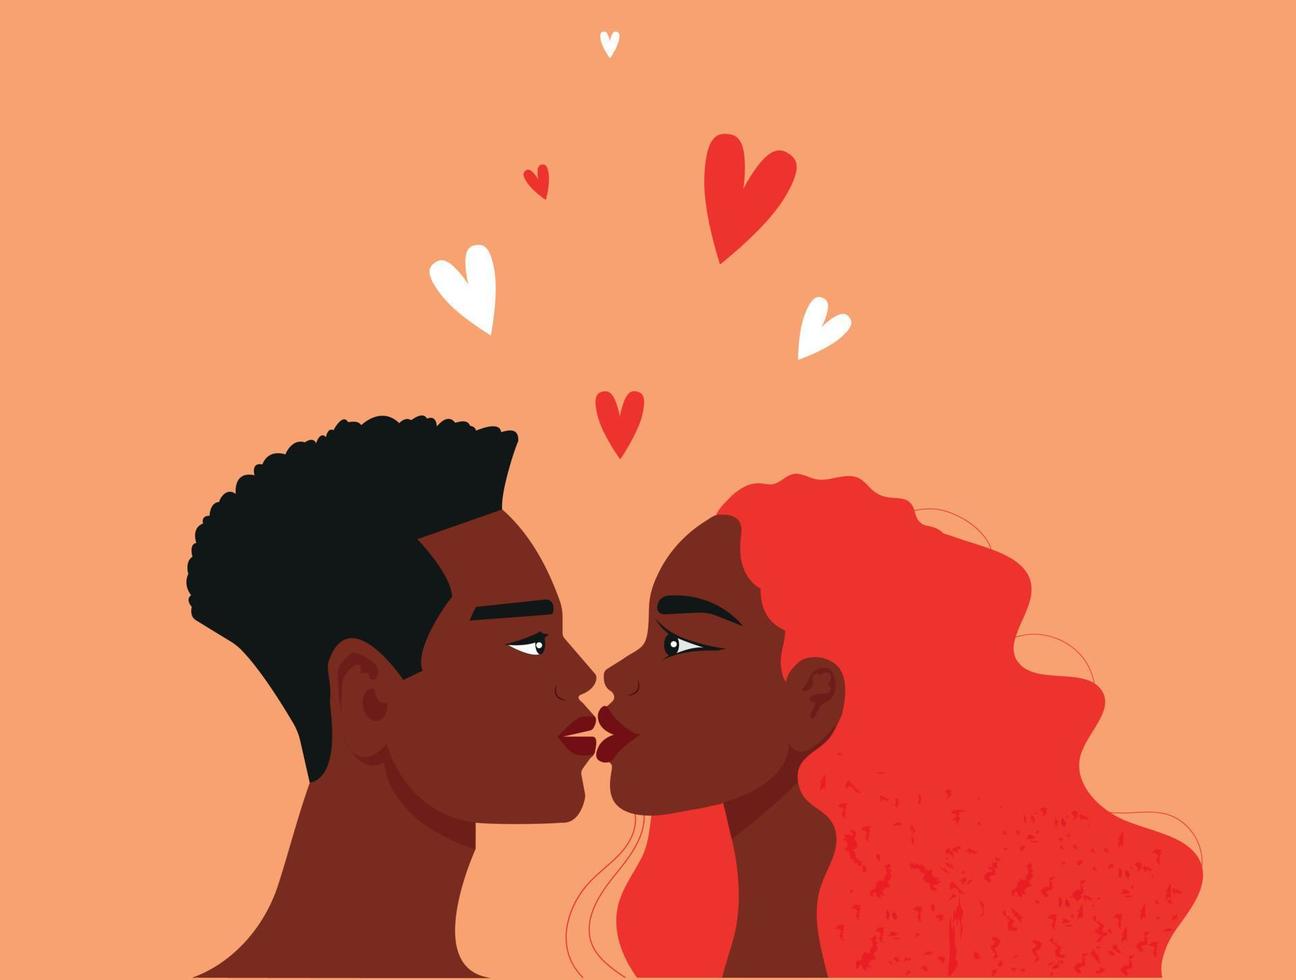 romántico joven africano Pareja besando africano americano vector siluetas de masculino y hembra caras. negro Pareja retratos para Boda romántico diseño. humano amor.